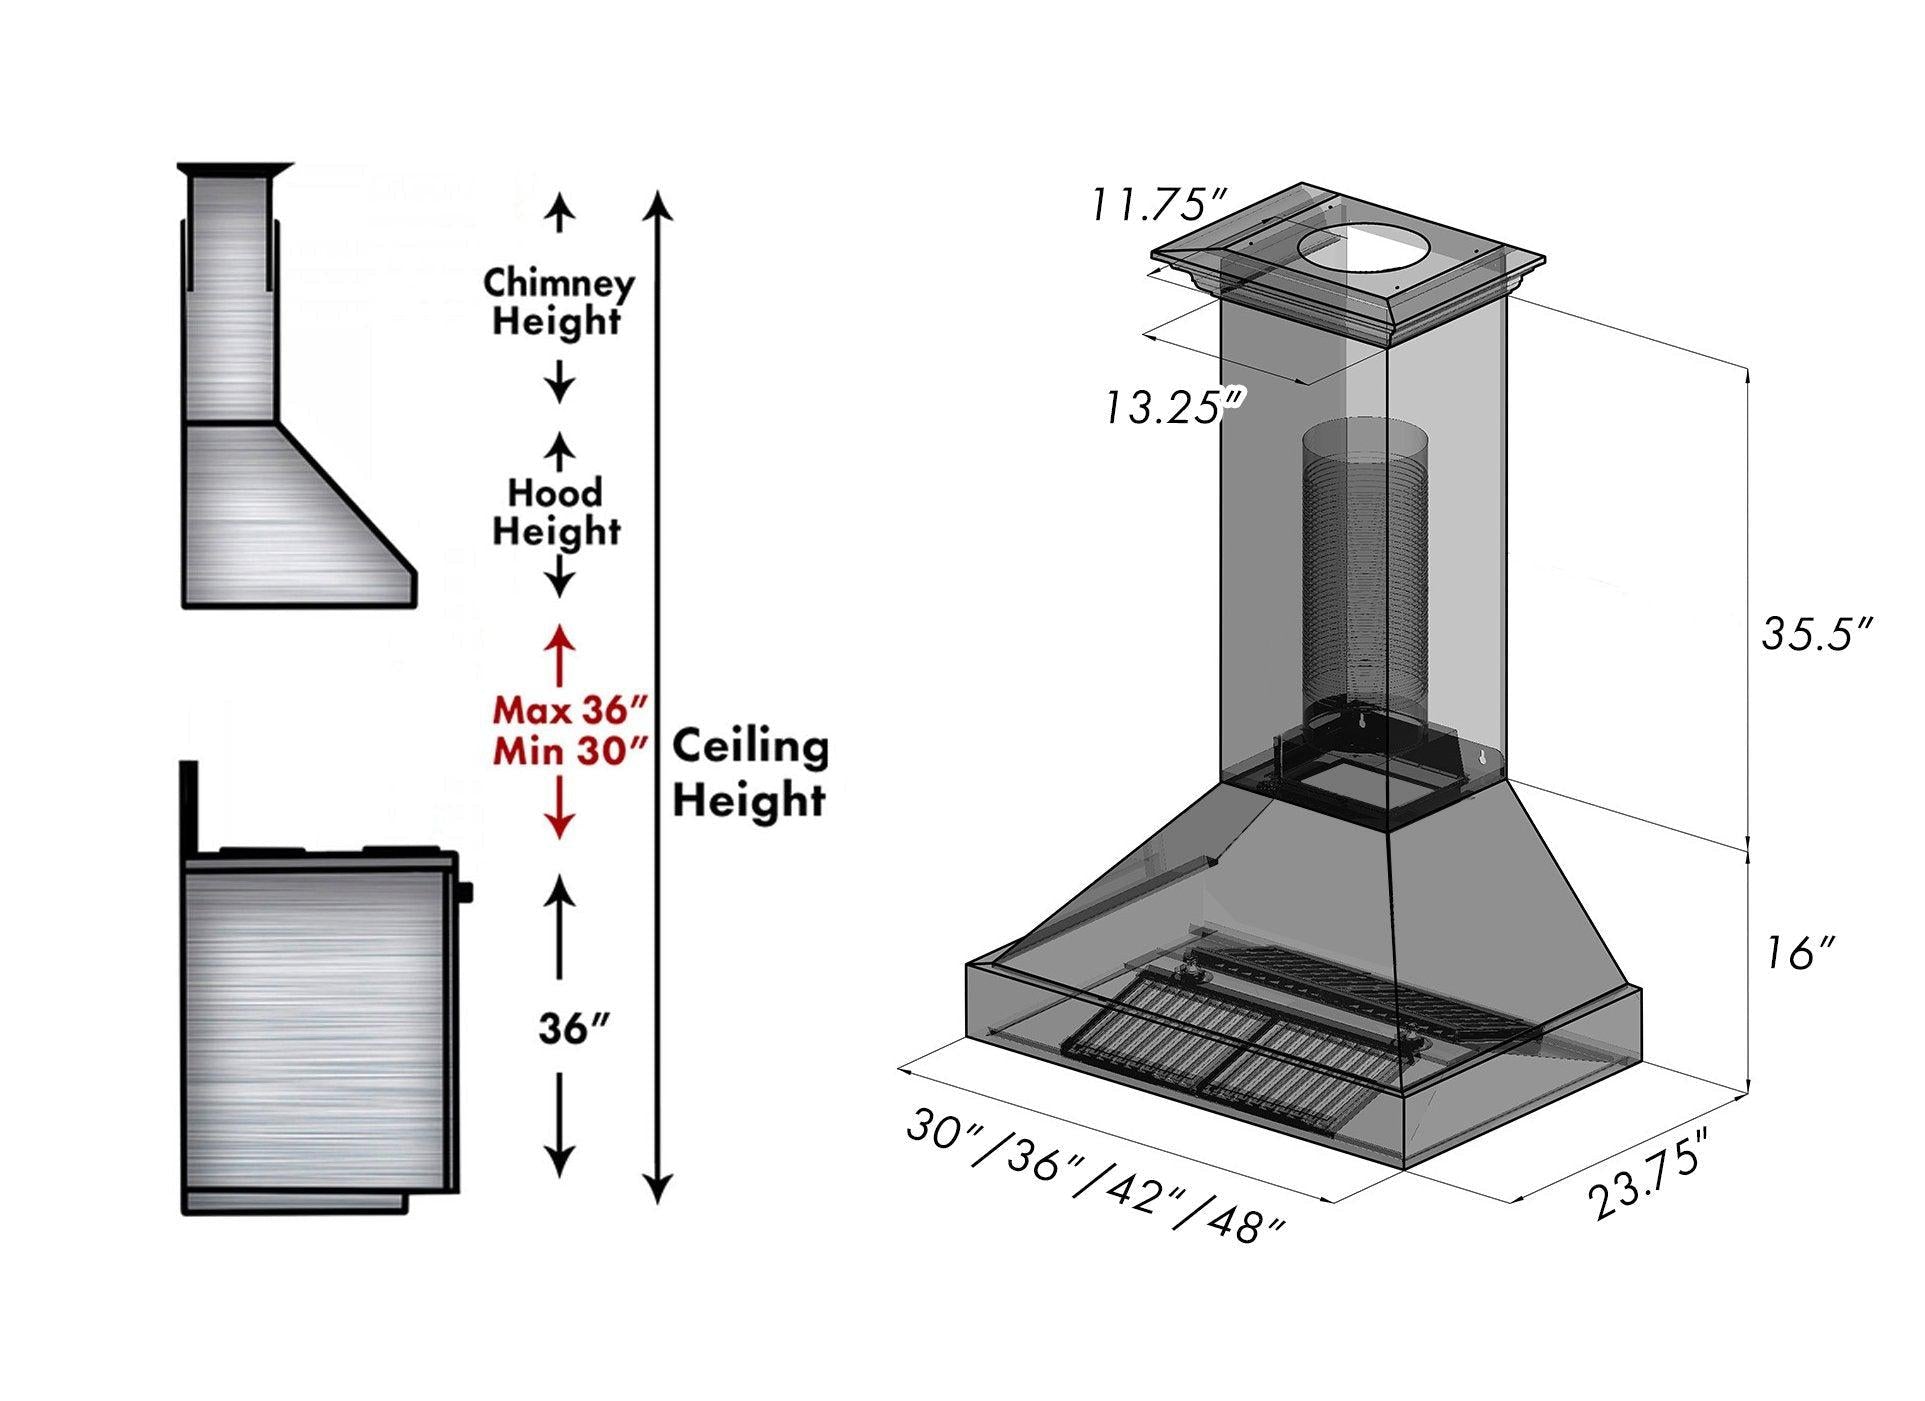 ZLINE Fingerprint Resistant Stainless Steel Range Hood (8654SN) dimensions for installation